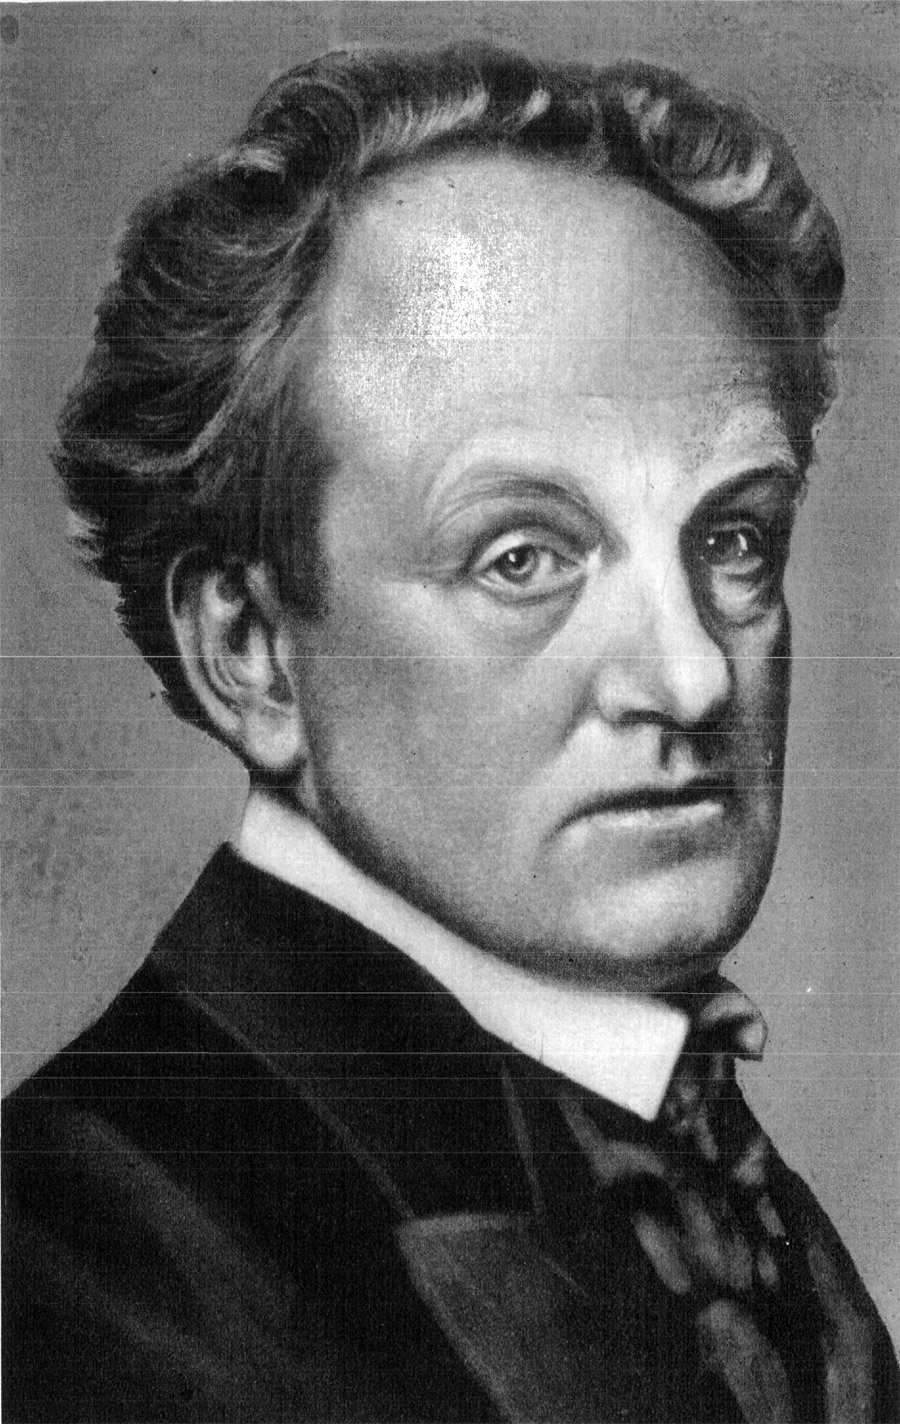 Gerhart Johann Robert Hauptmann